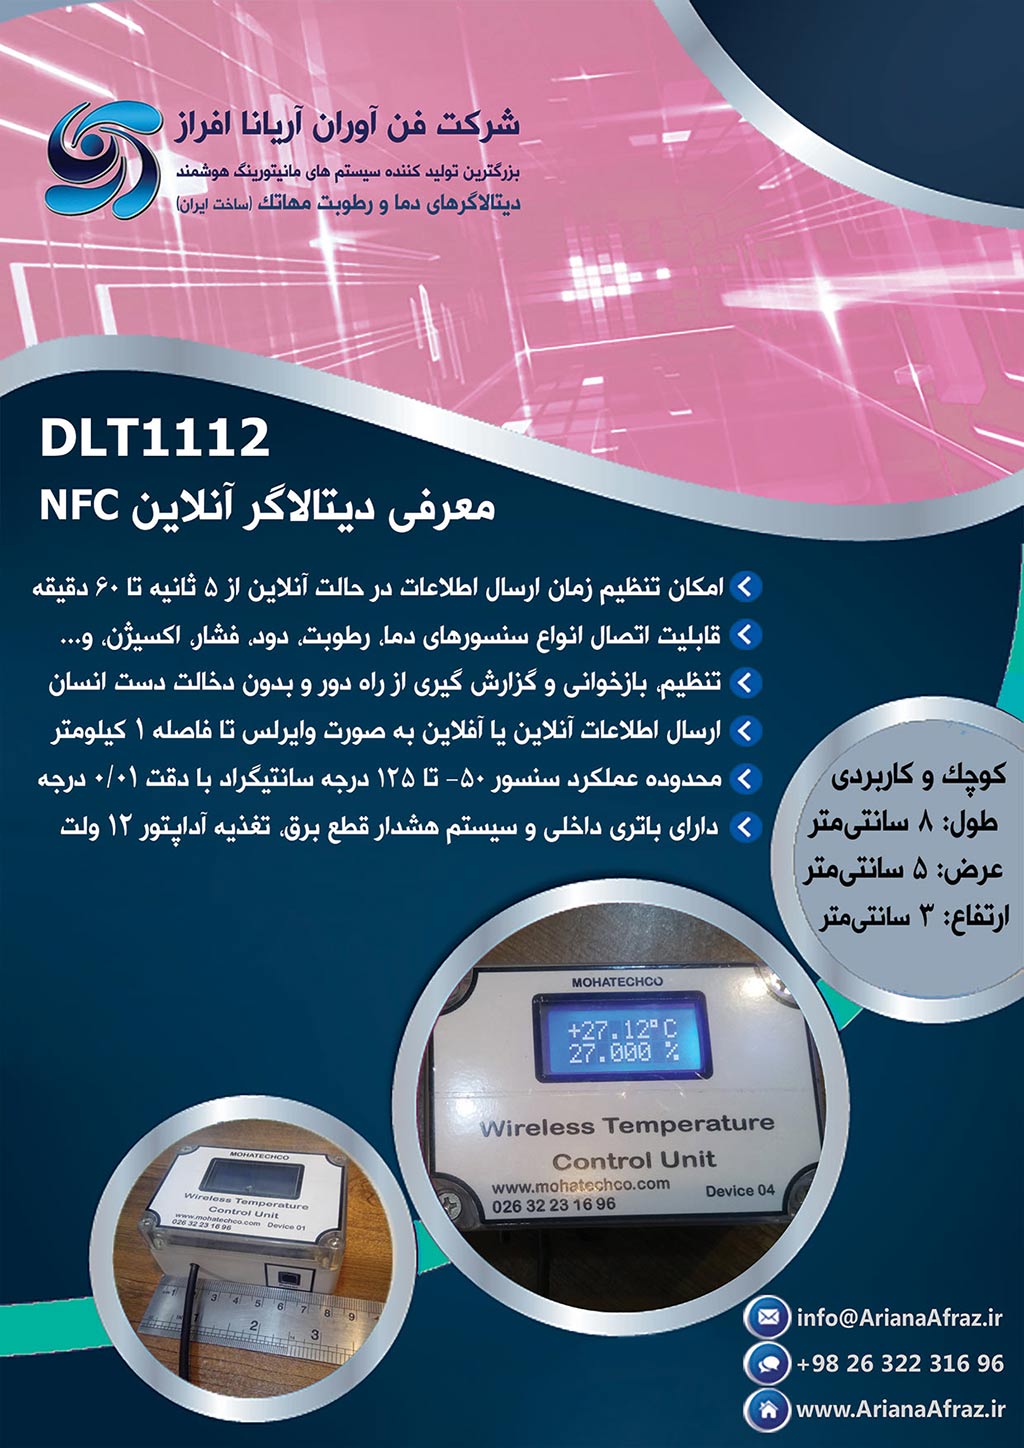 دیتالاگر آنلاین مهاتک مدل 1112 با پروتکل NFC